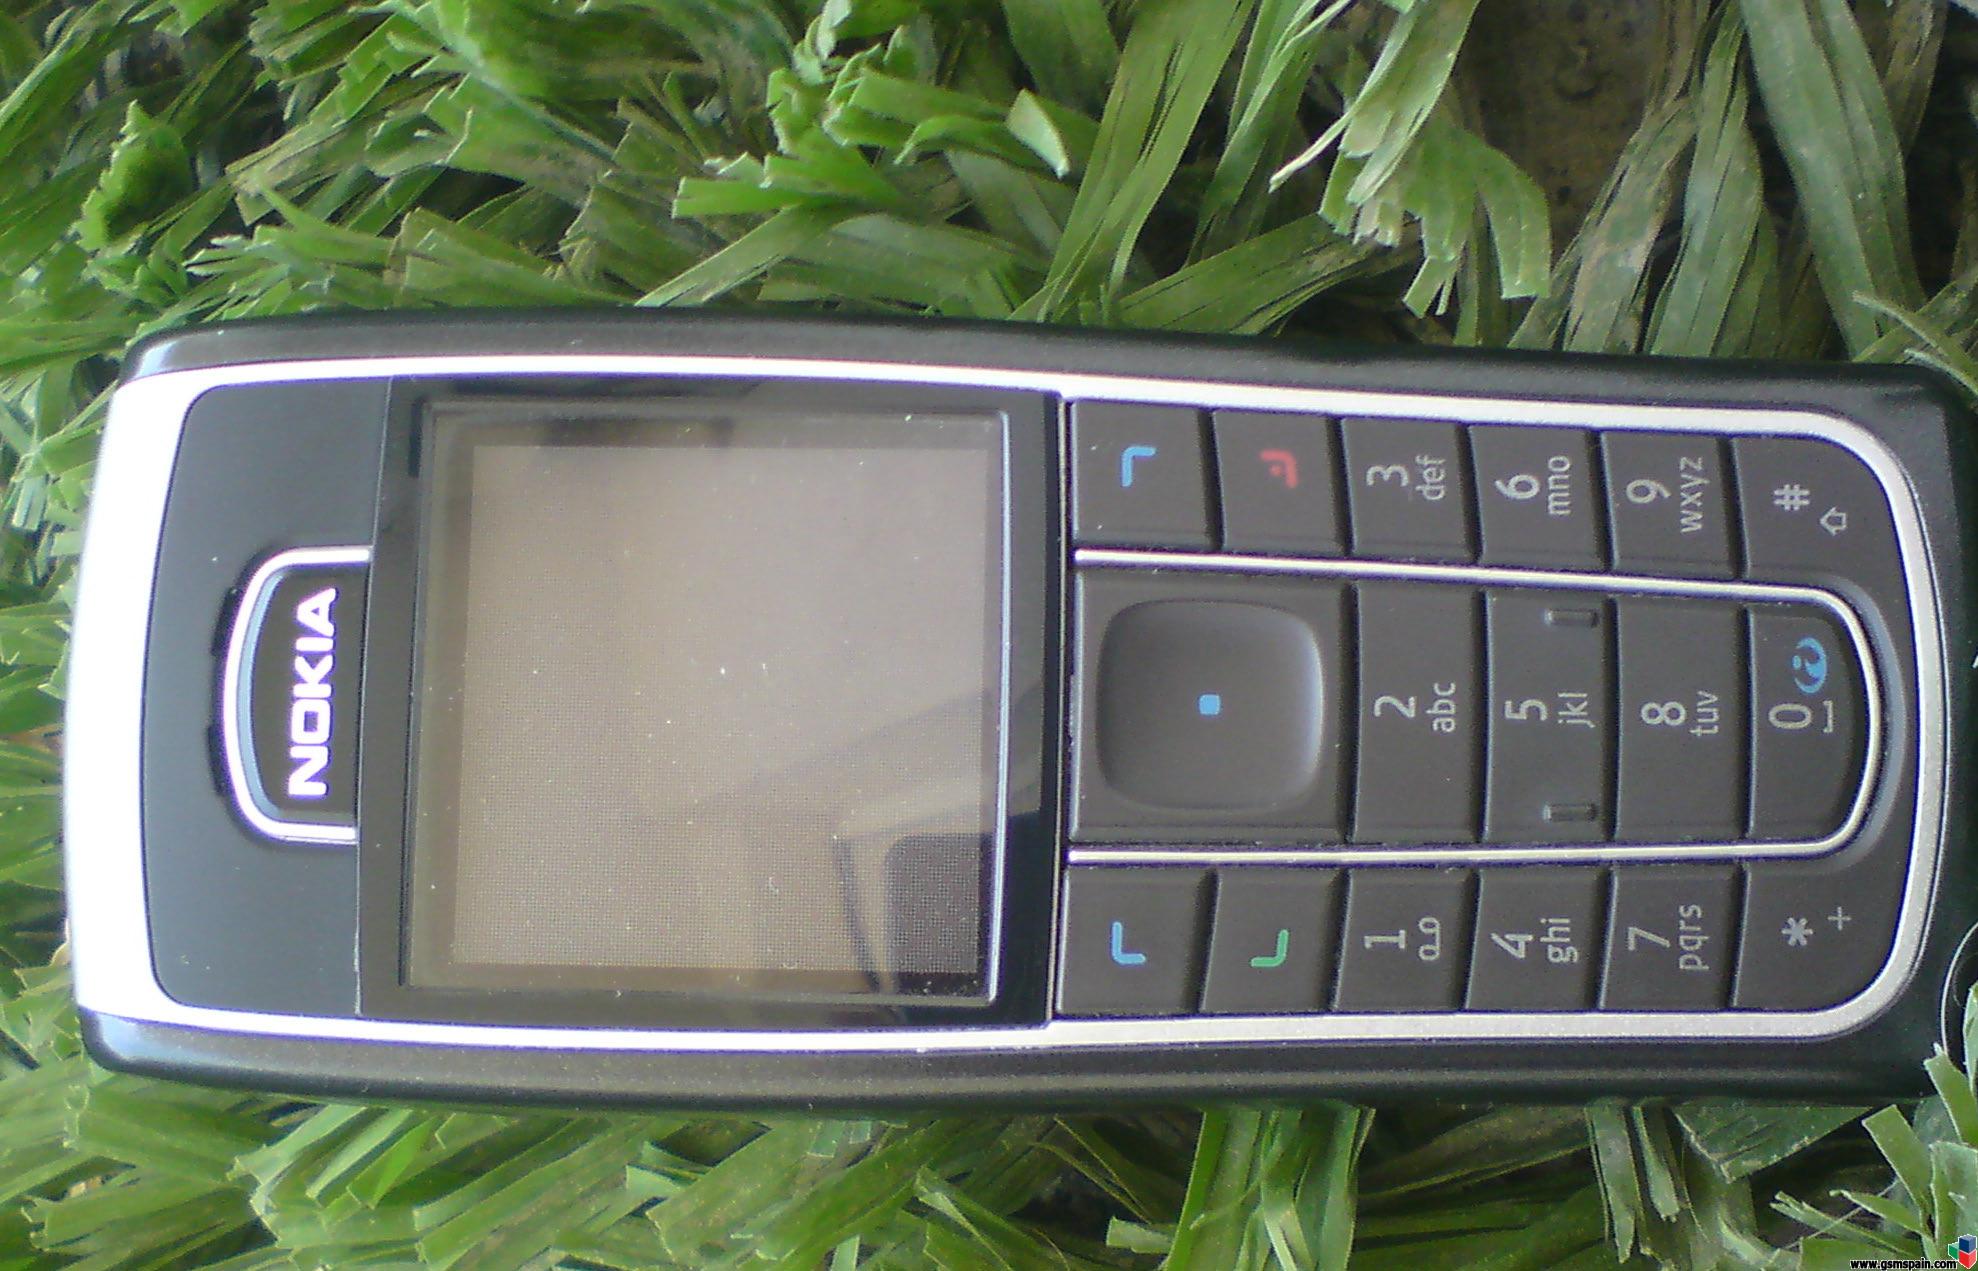 SE G900 un symbian tactil a un precio de lujo